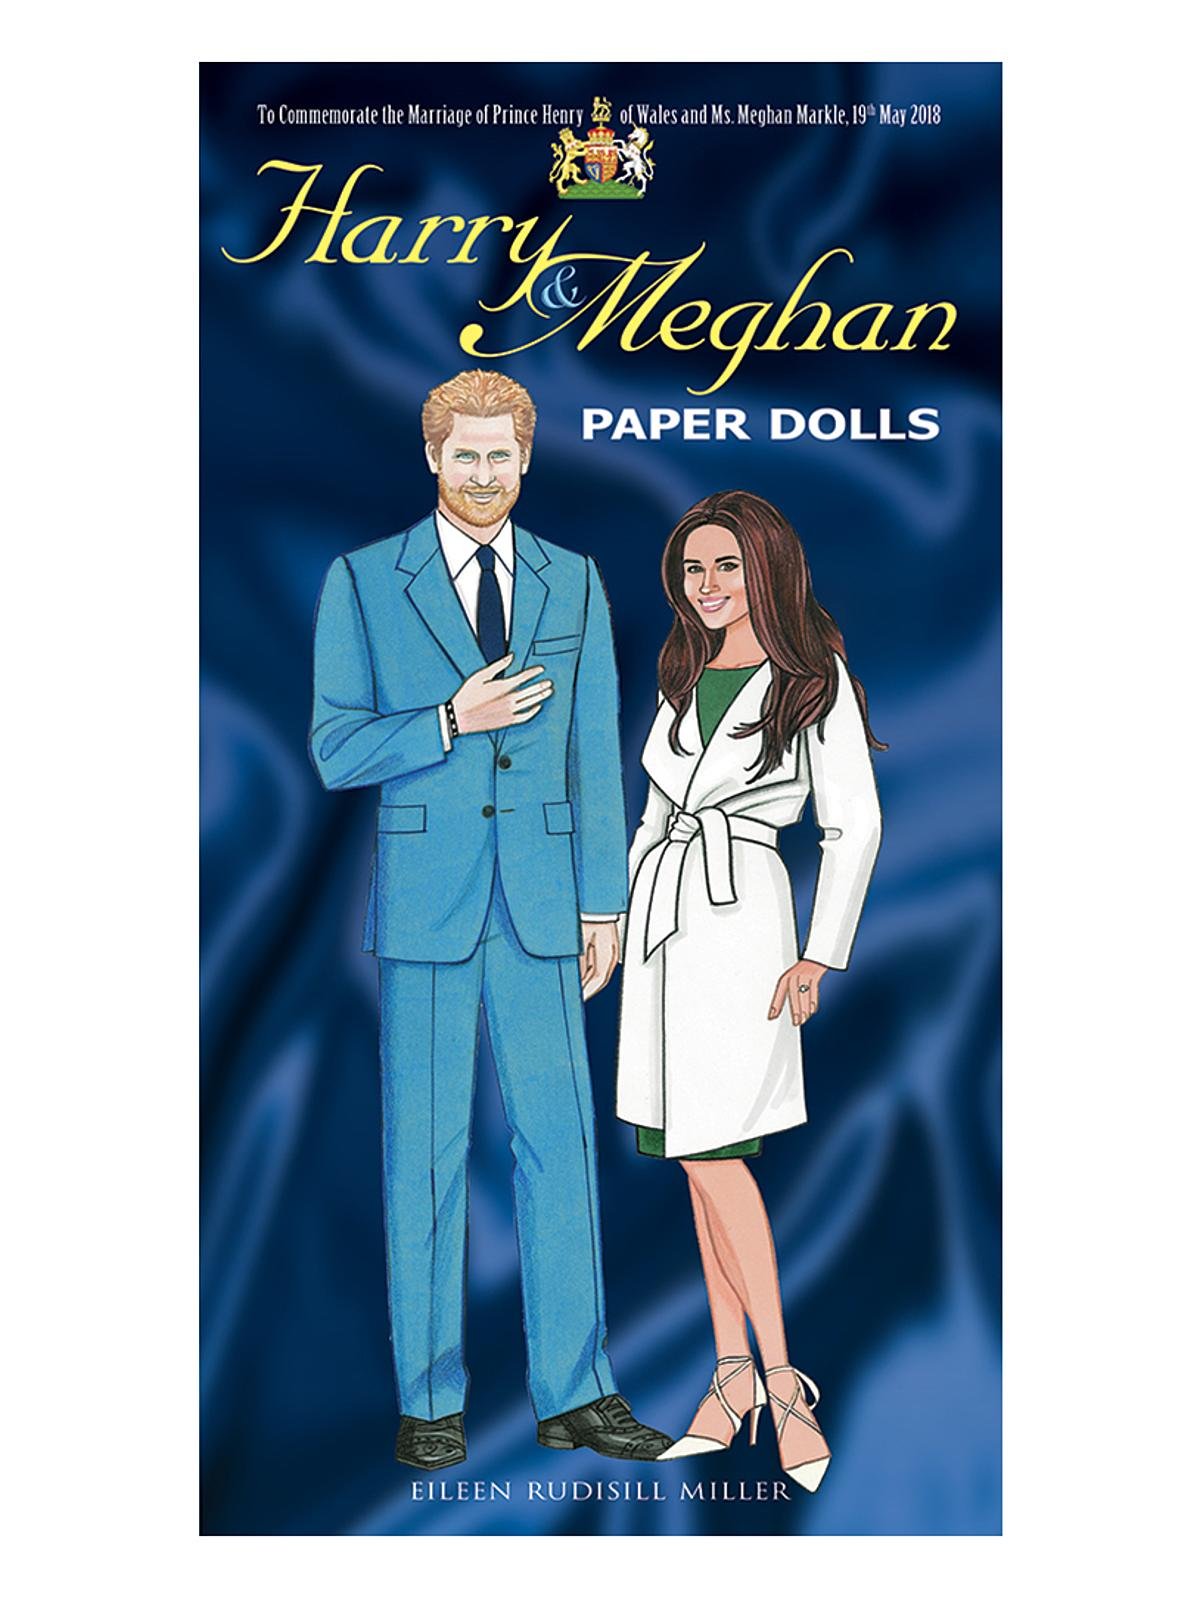 Harry & Meghan Paper Dolls